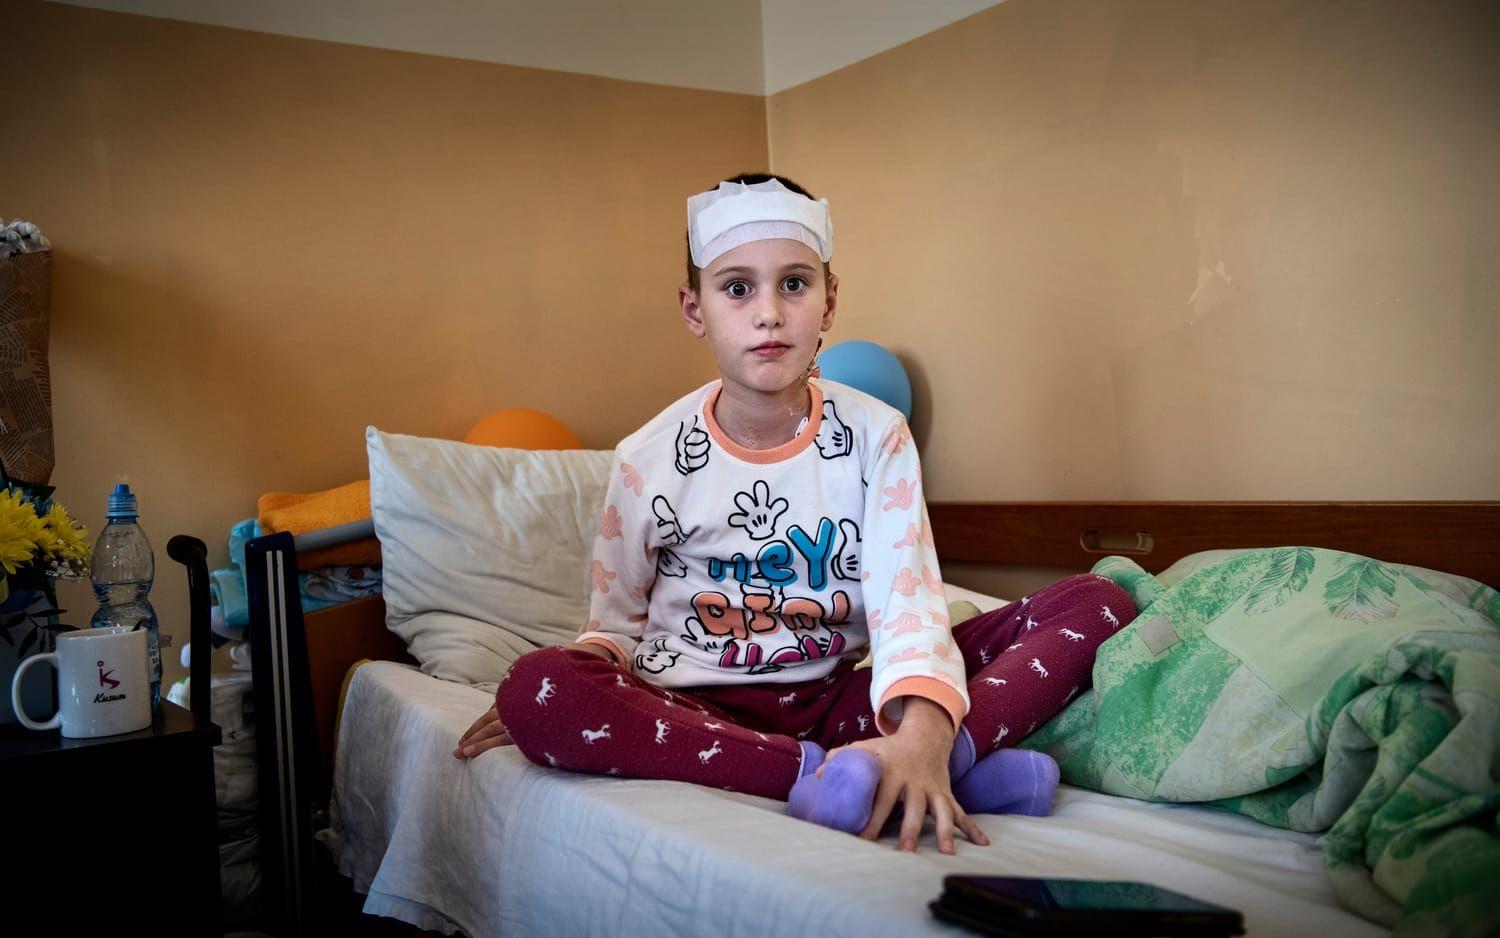 Sophia Vavreniyk, 9, svävade mellan liv och död, med splitter i huvudet, efter en attack mot Mykolajiv i Ukraina. Mot alla odds överlevde hon och vårdas nu på sjukhus i Lviv. ”Jag täckte henne med kroppen och bad till gud”, säger hennes mamma.